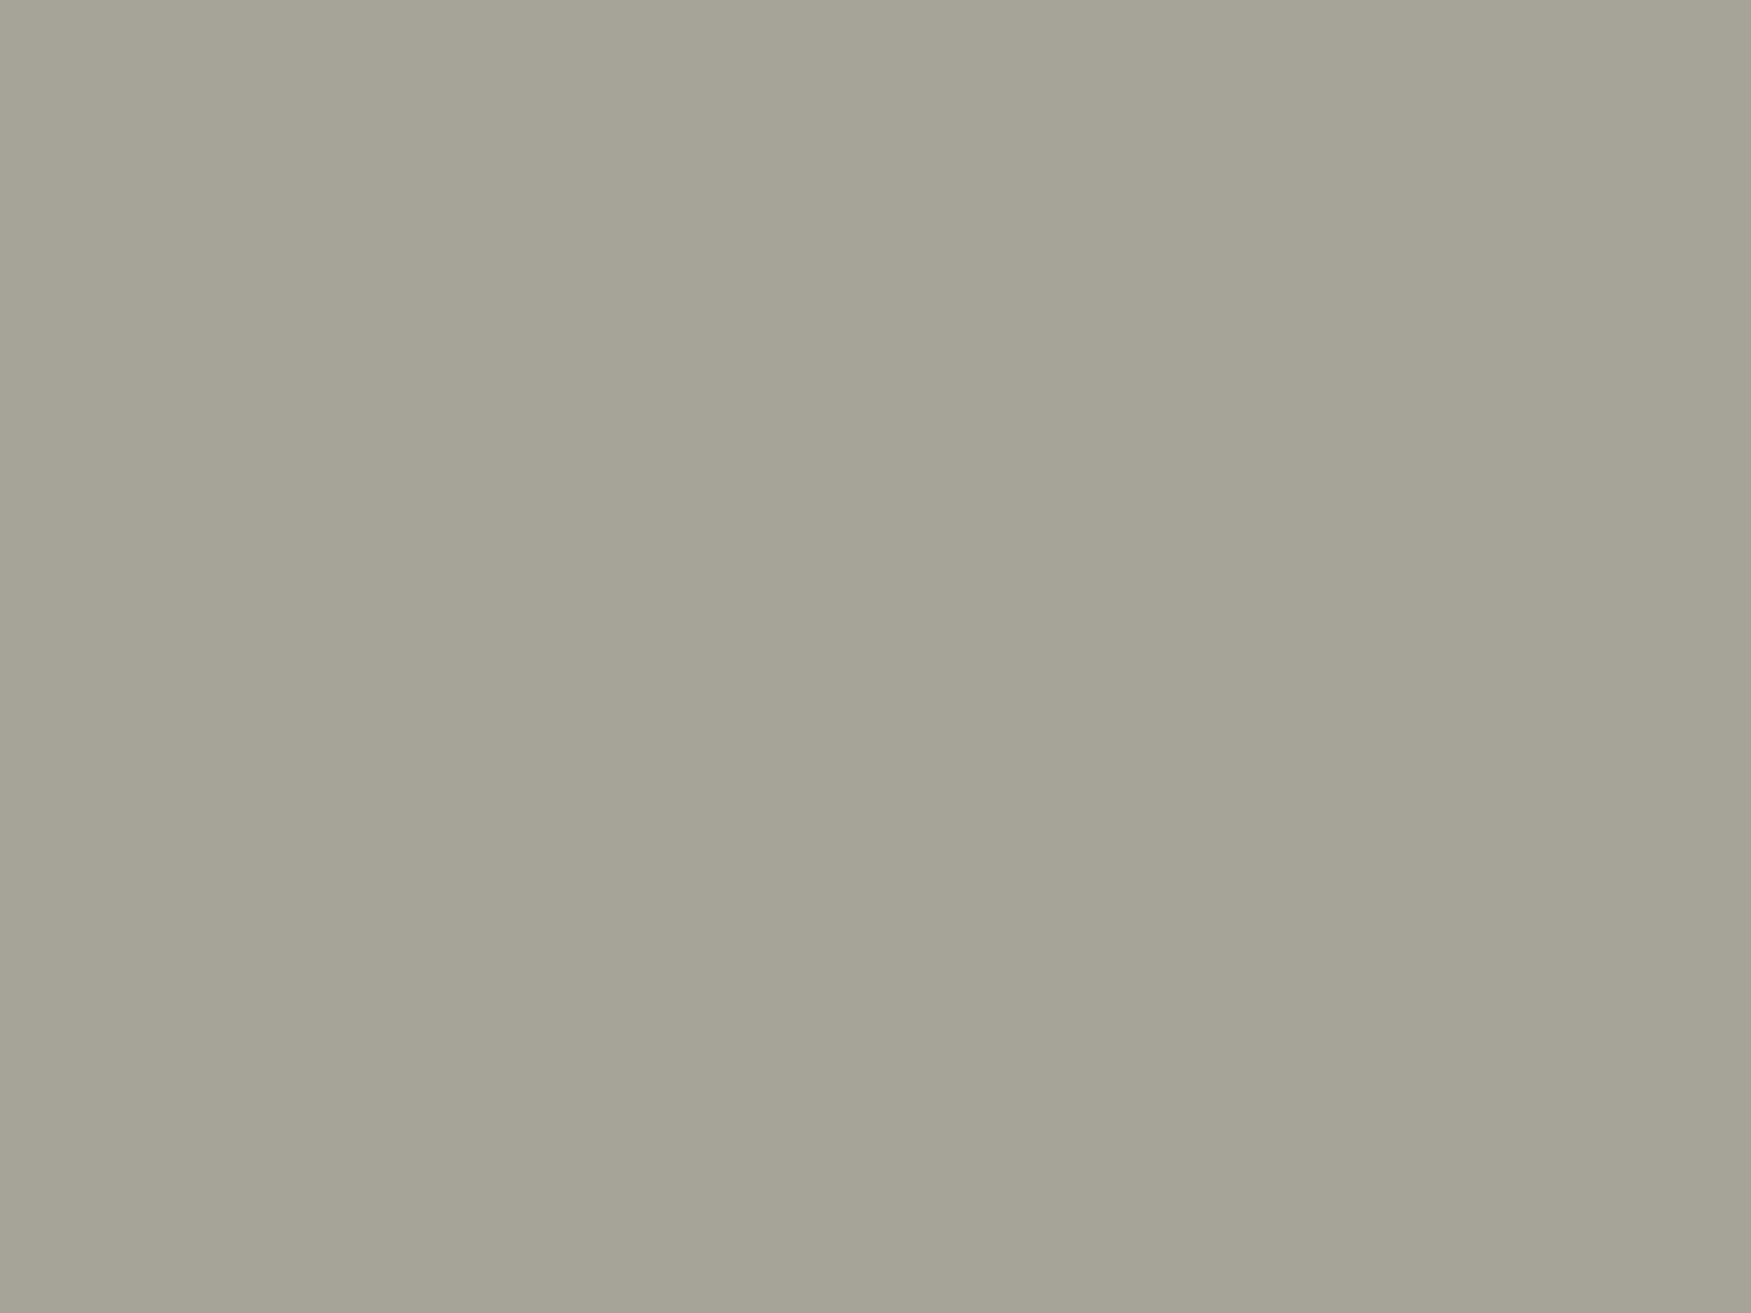 Федор Алексеев. Красная площадь в Москве. Около 1801. Государственный музей изобразительных искусств имени А.С. Пушкина, Москва